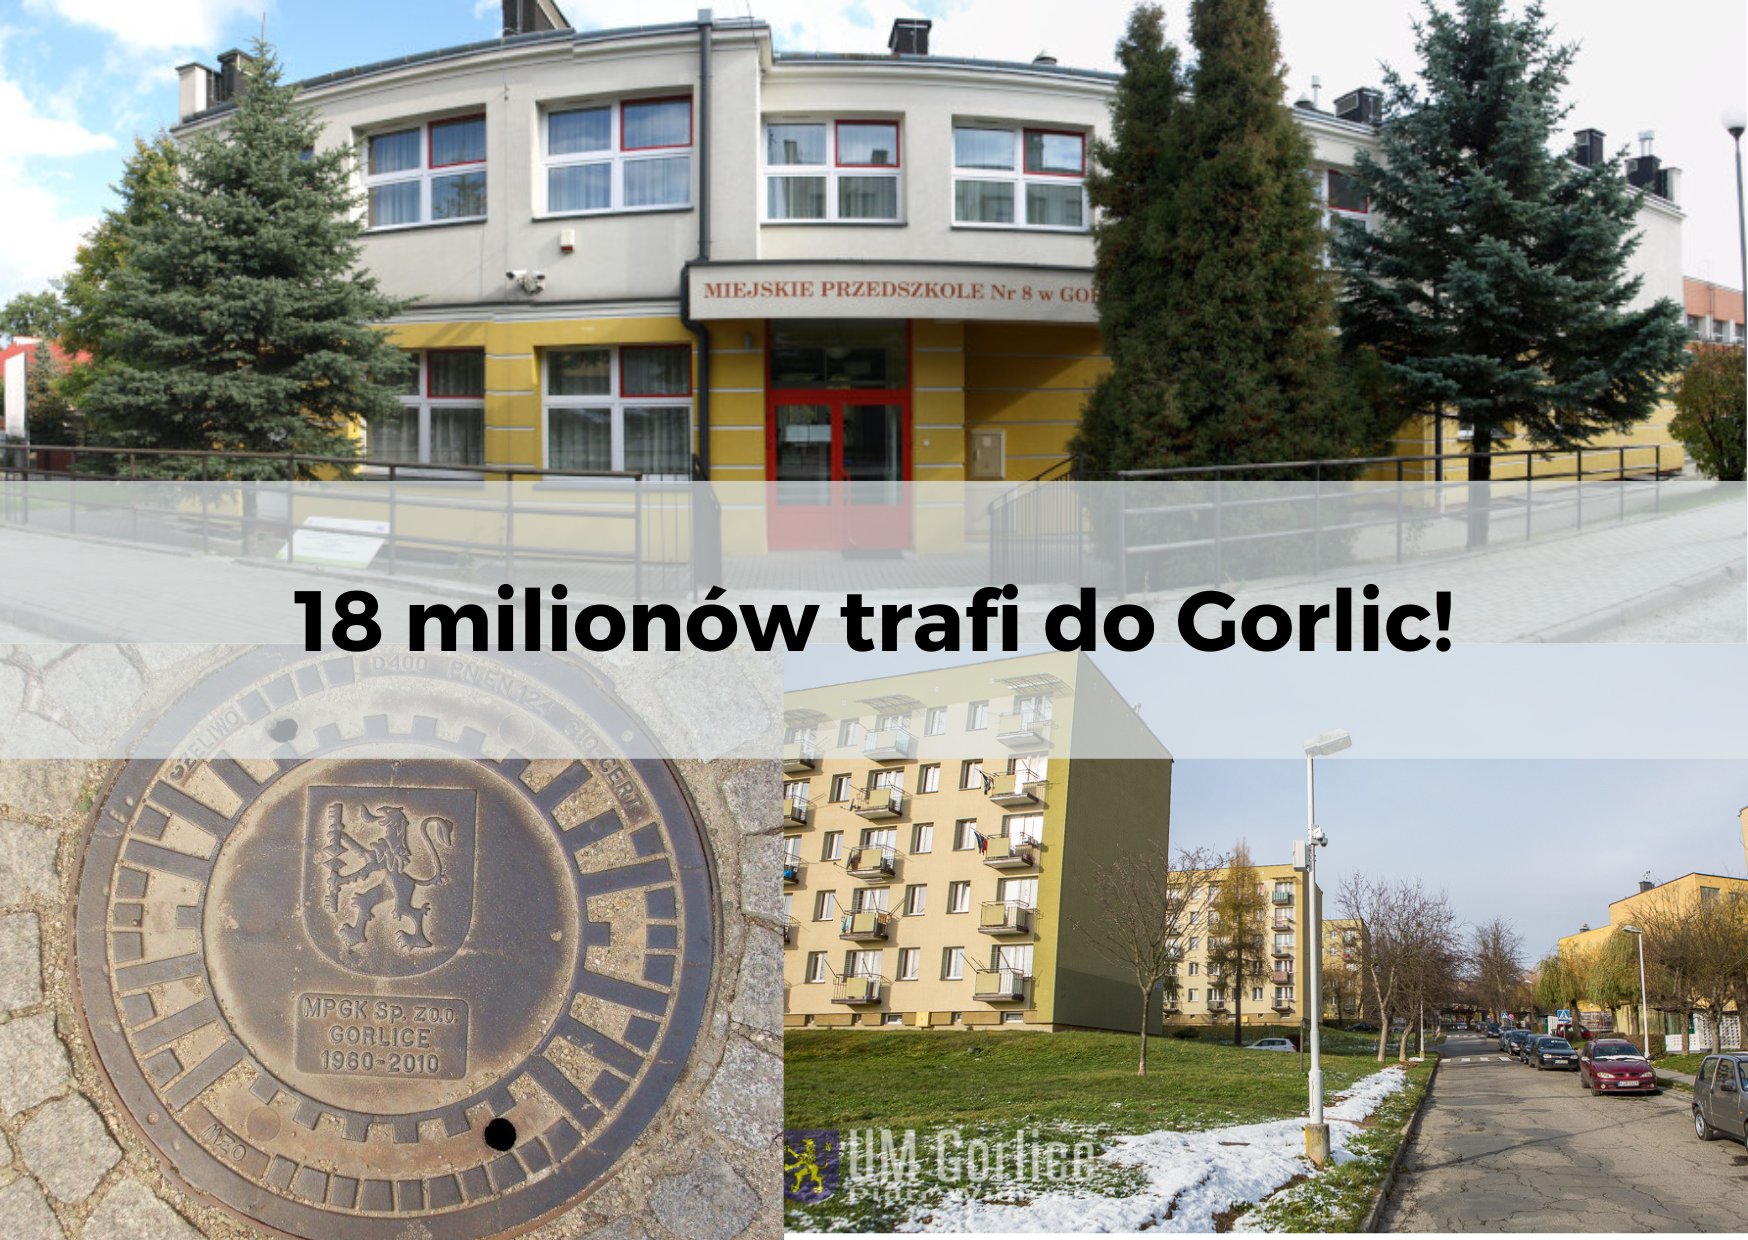 18 mln trafi do Gorlic!